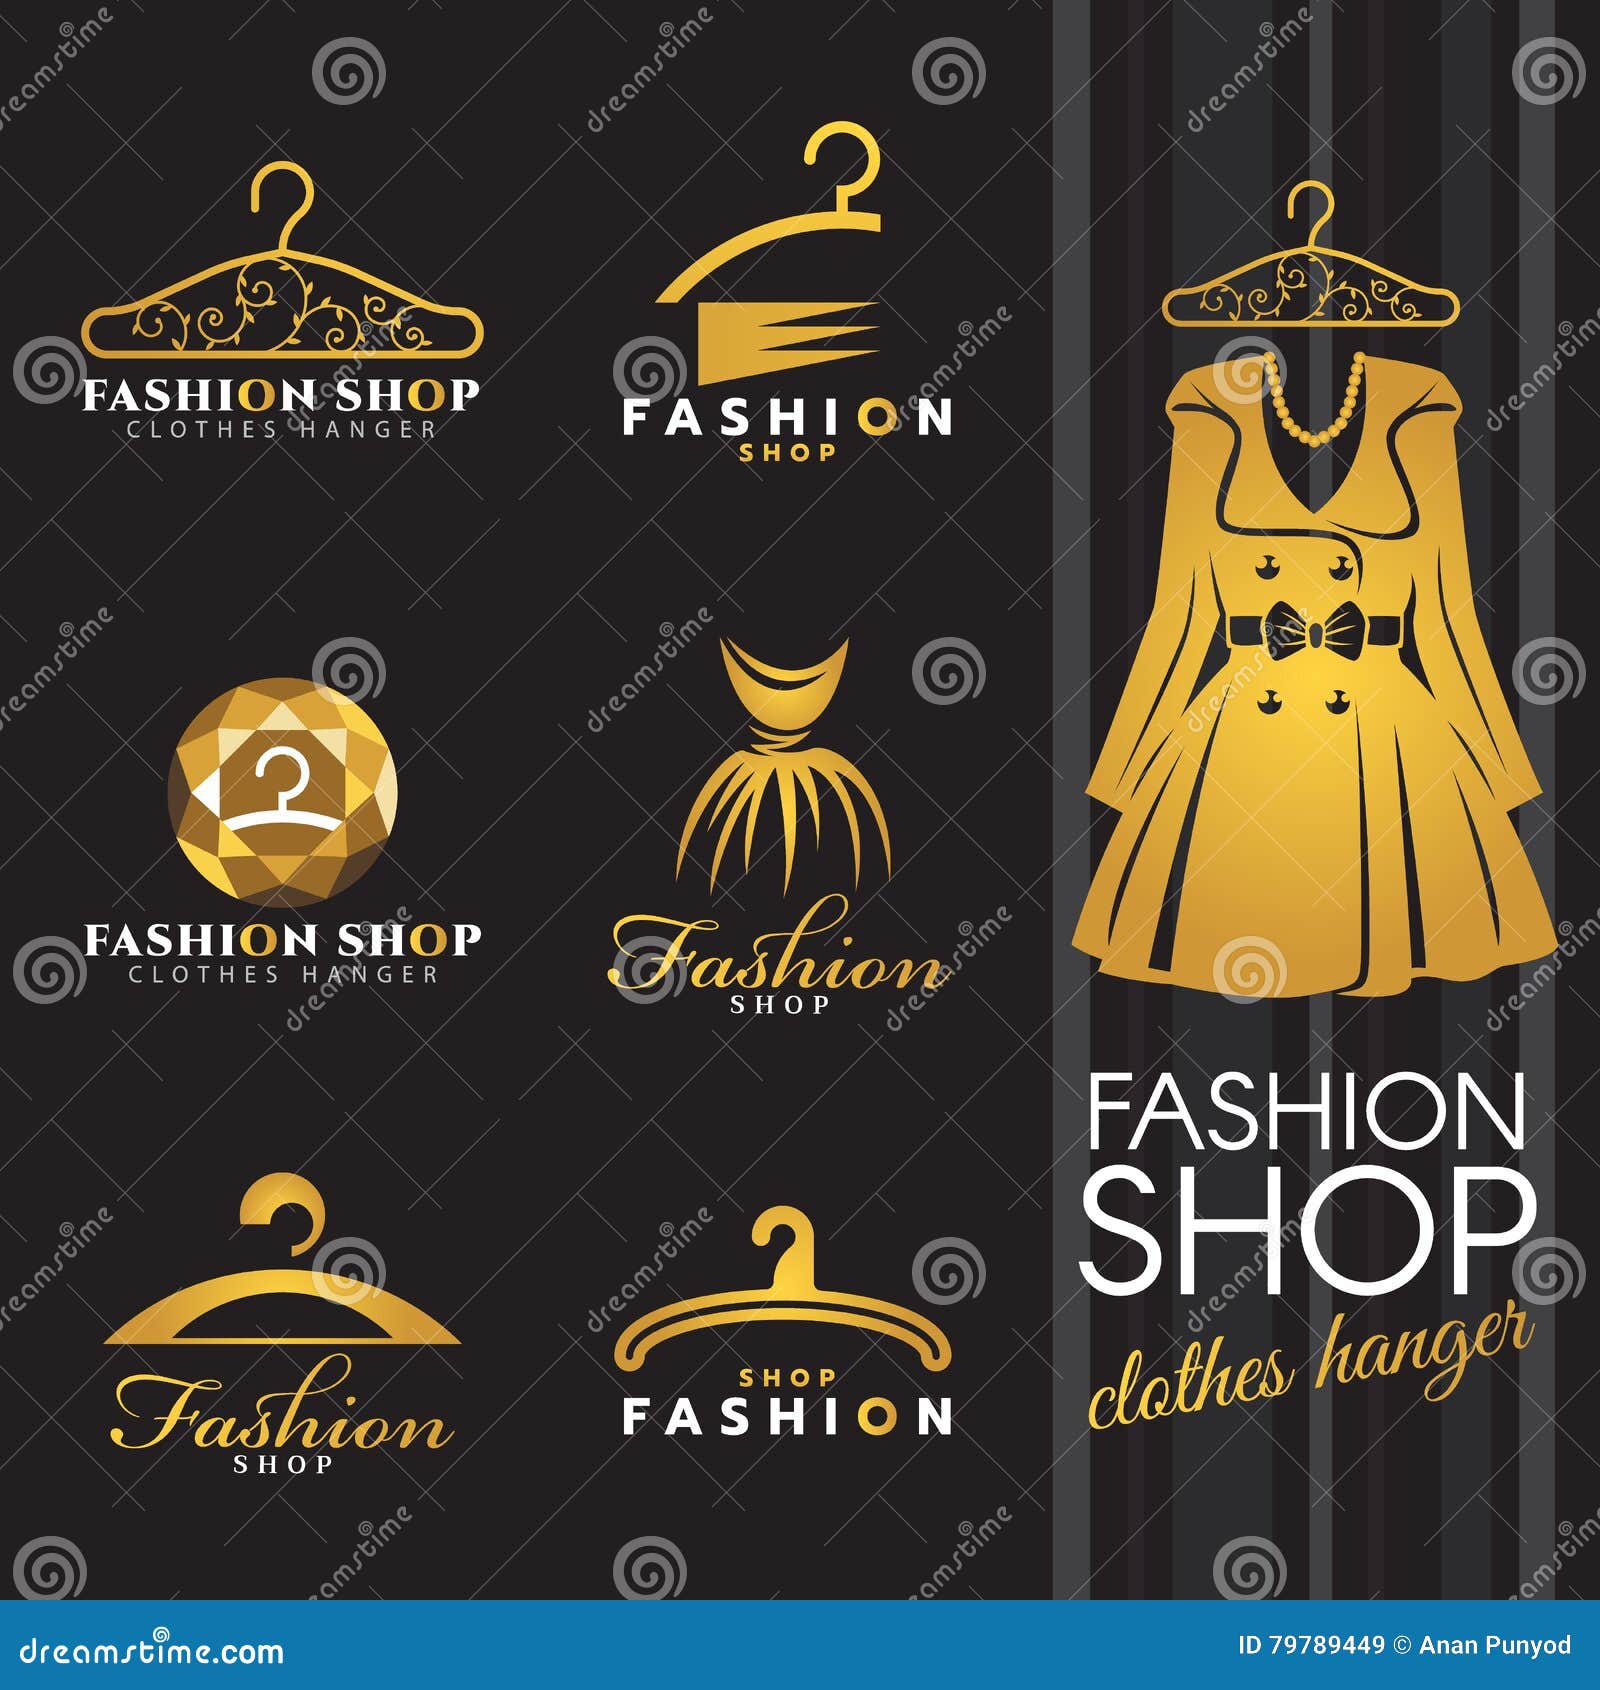 Hanger Logo, Gold Boutique Logo, Clothes Hanger Logo, Boutique logo design,  Clothing logo, Watercolor Hanger Logo, Heart hanger logo, hanger